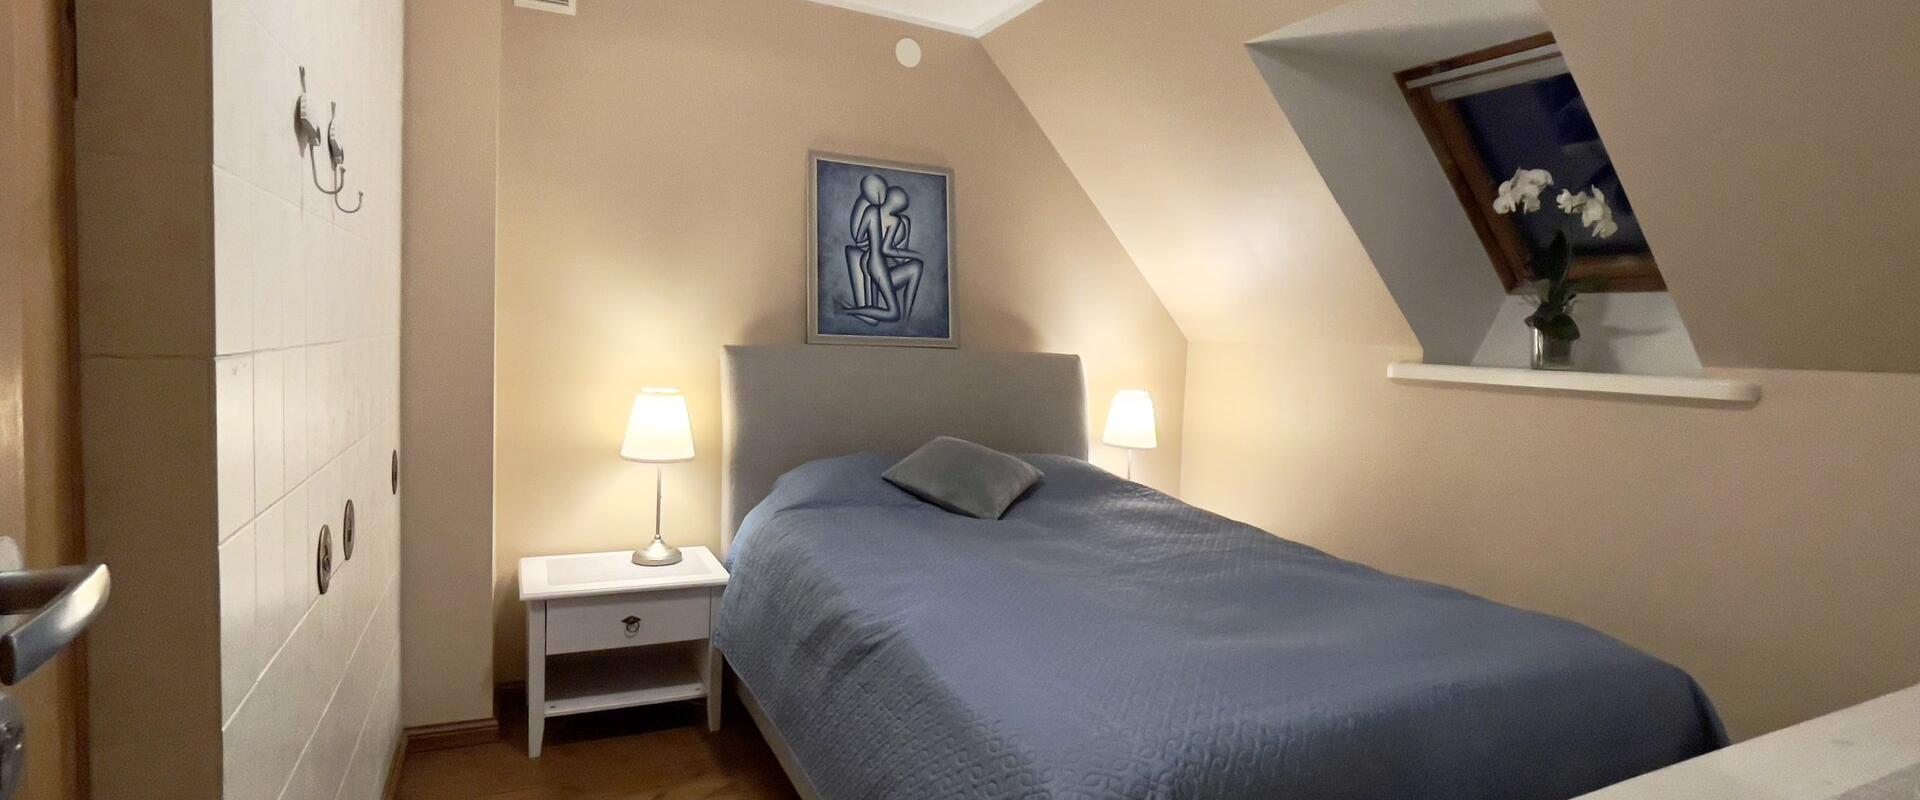 smaller bedroom-bed - 140 wide